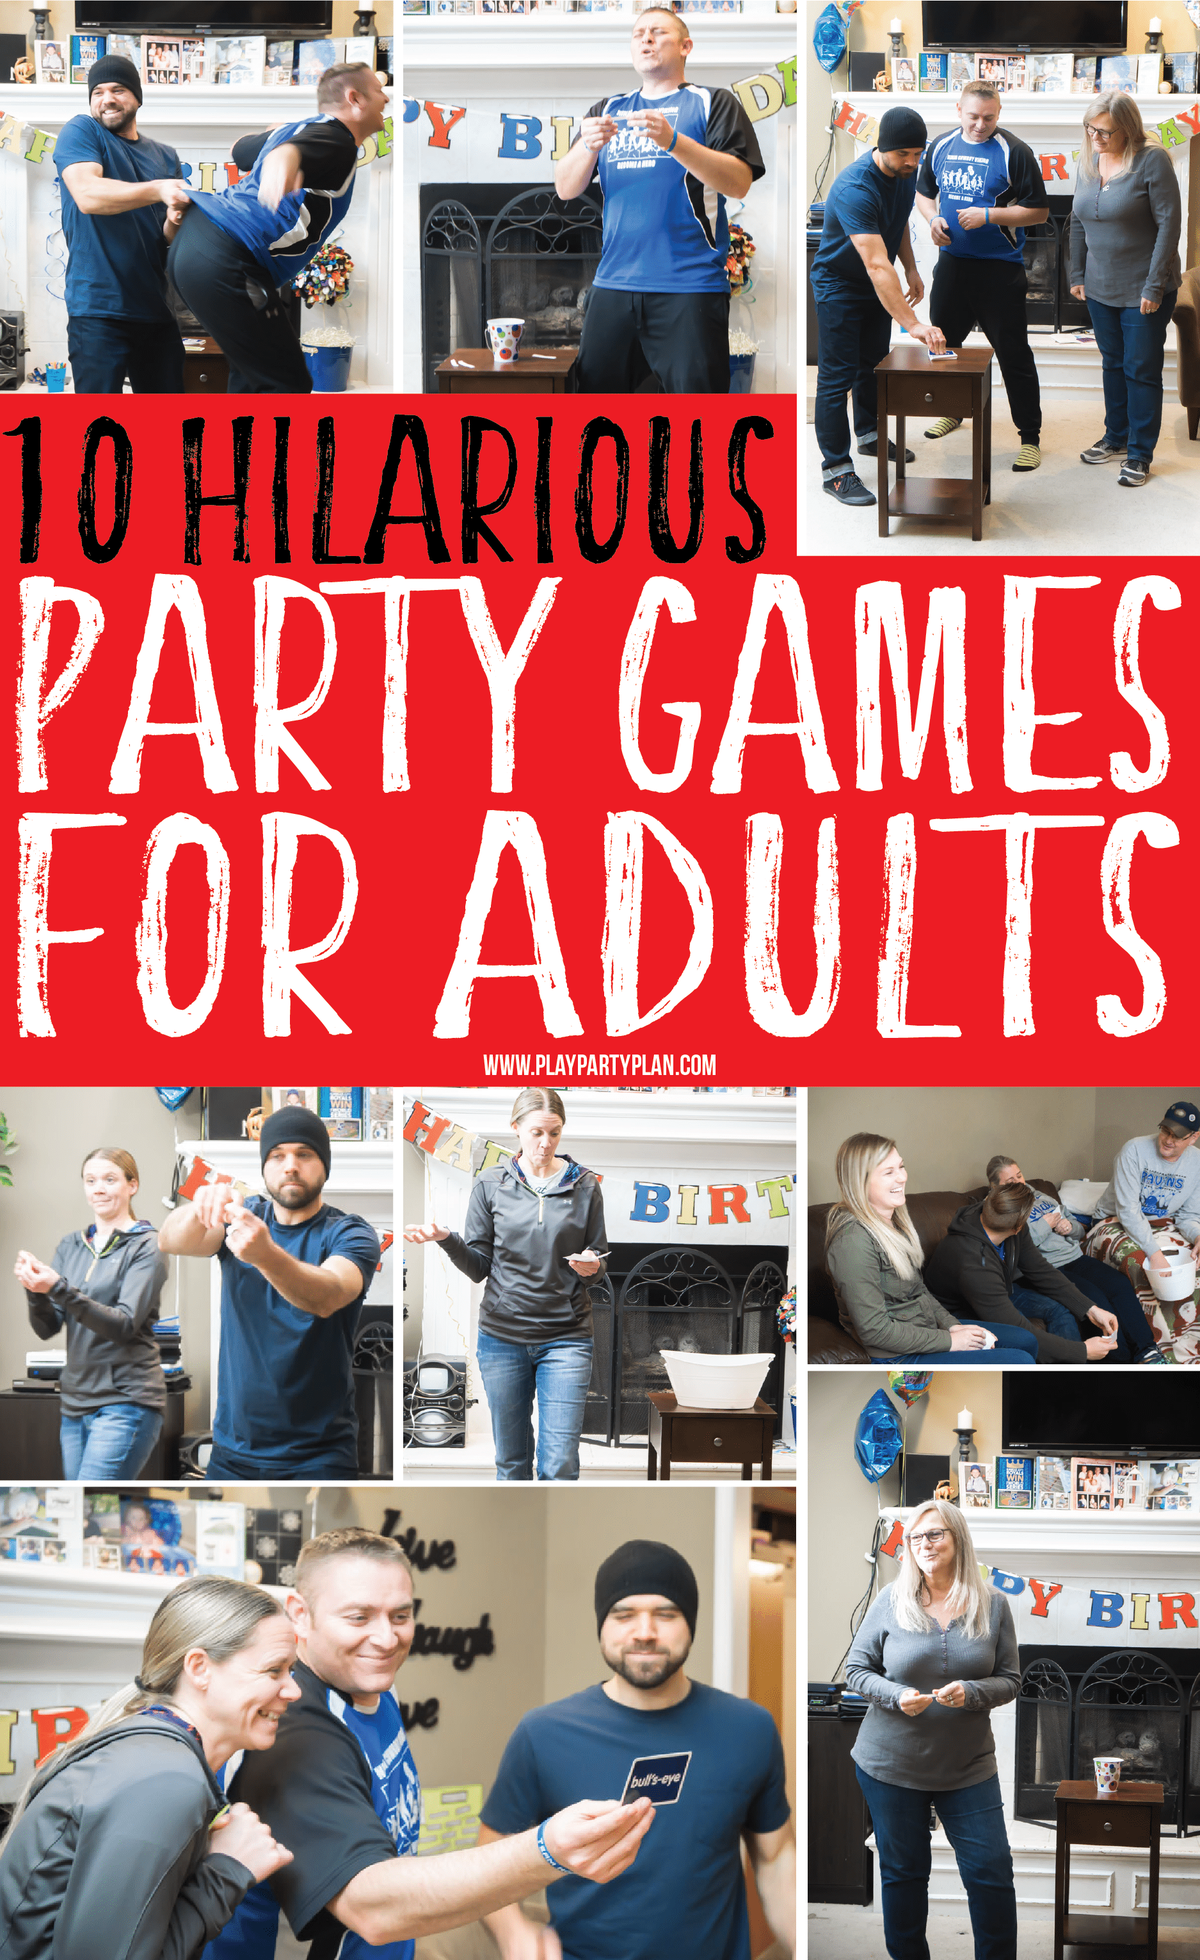 10 משחקי מסיבות מצחיקים למבוגרים שיעבדו נהדר גם לבני נוער או לקבוצות! שחקו בפנים או בחוץ במפגש משפחתי או מסיבת יום הולדת! זה לא משנה, הם מצחיקים בכל מקרה! והכי חשוב, אין צורך בשתייה או באלכוהול!